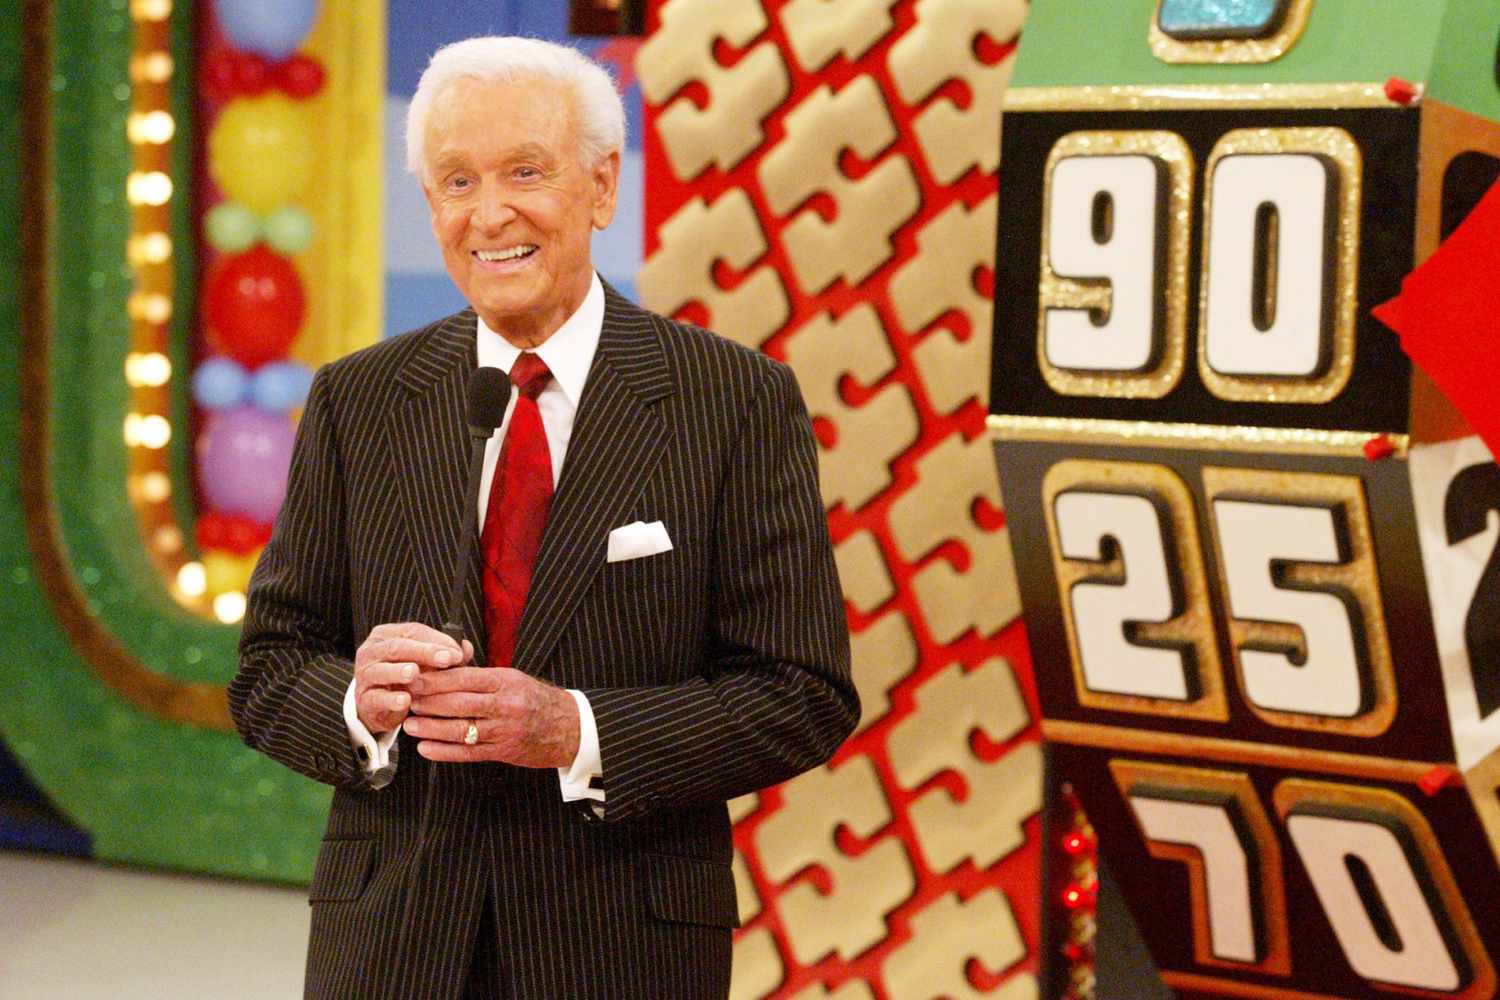 Bob Barker, presentador de 'The Price Is Right' desde hace mucho tiempo, muere a los 99 años: 'El MC más grande del mundo'